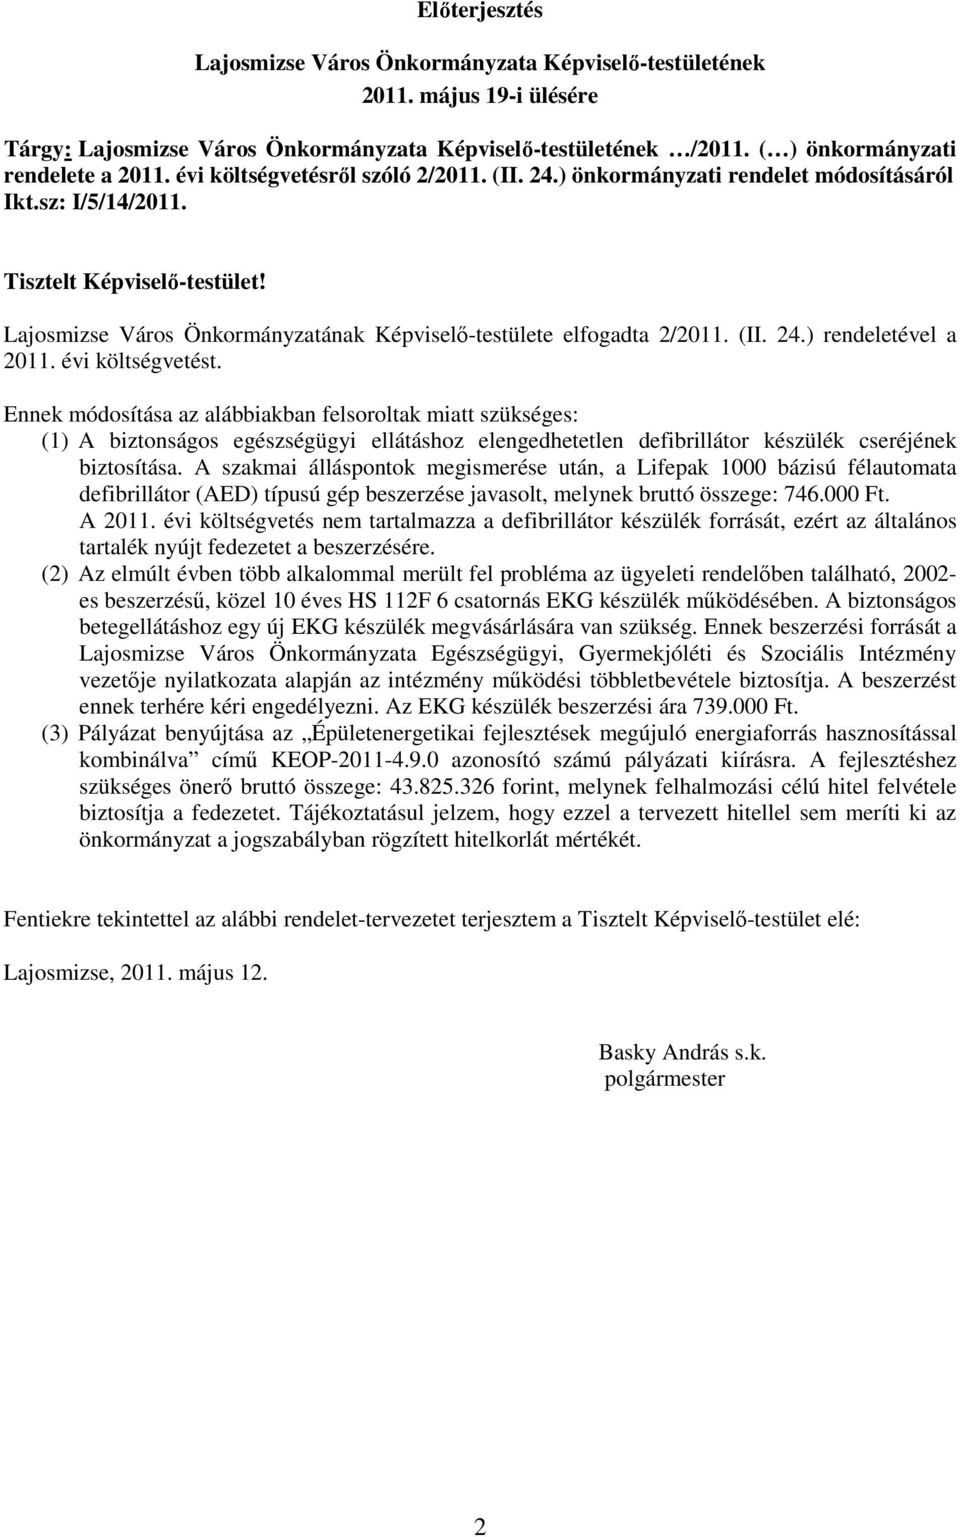 Lajosmizse Város Önkormányzatának Képviselı-testülete elfogadta 2/2011. (II. 24.) rendeletével a 2011. évi költségvetést.